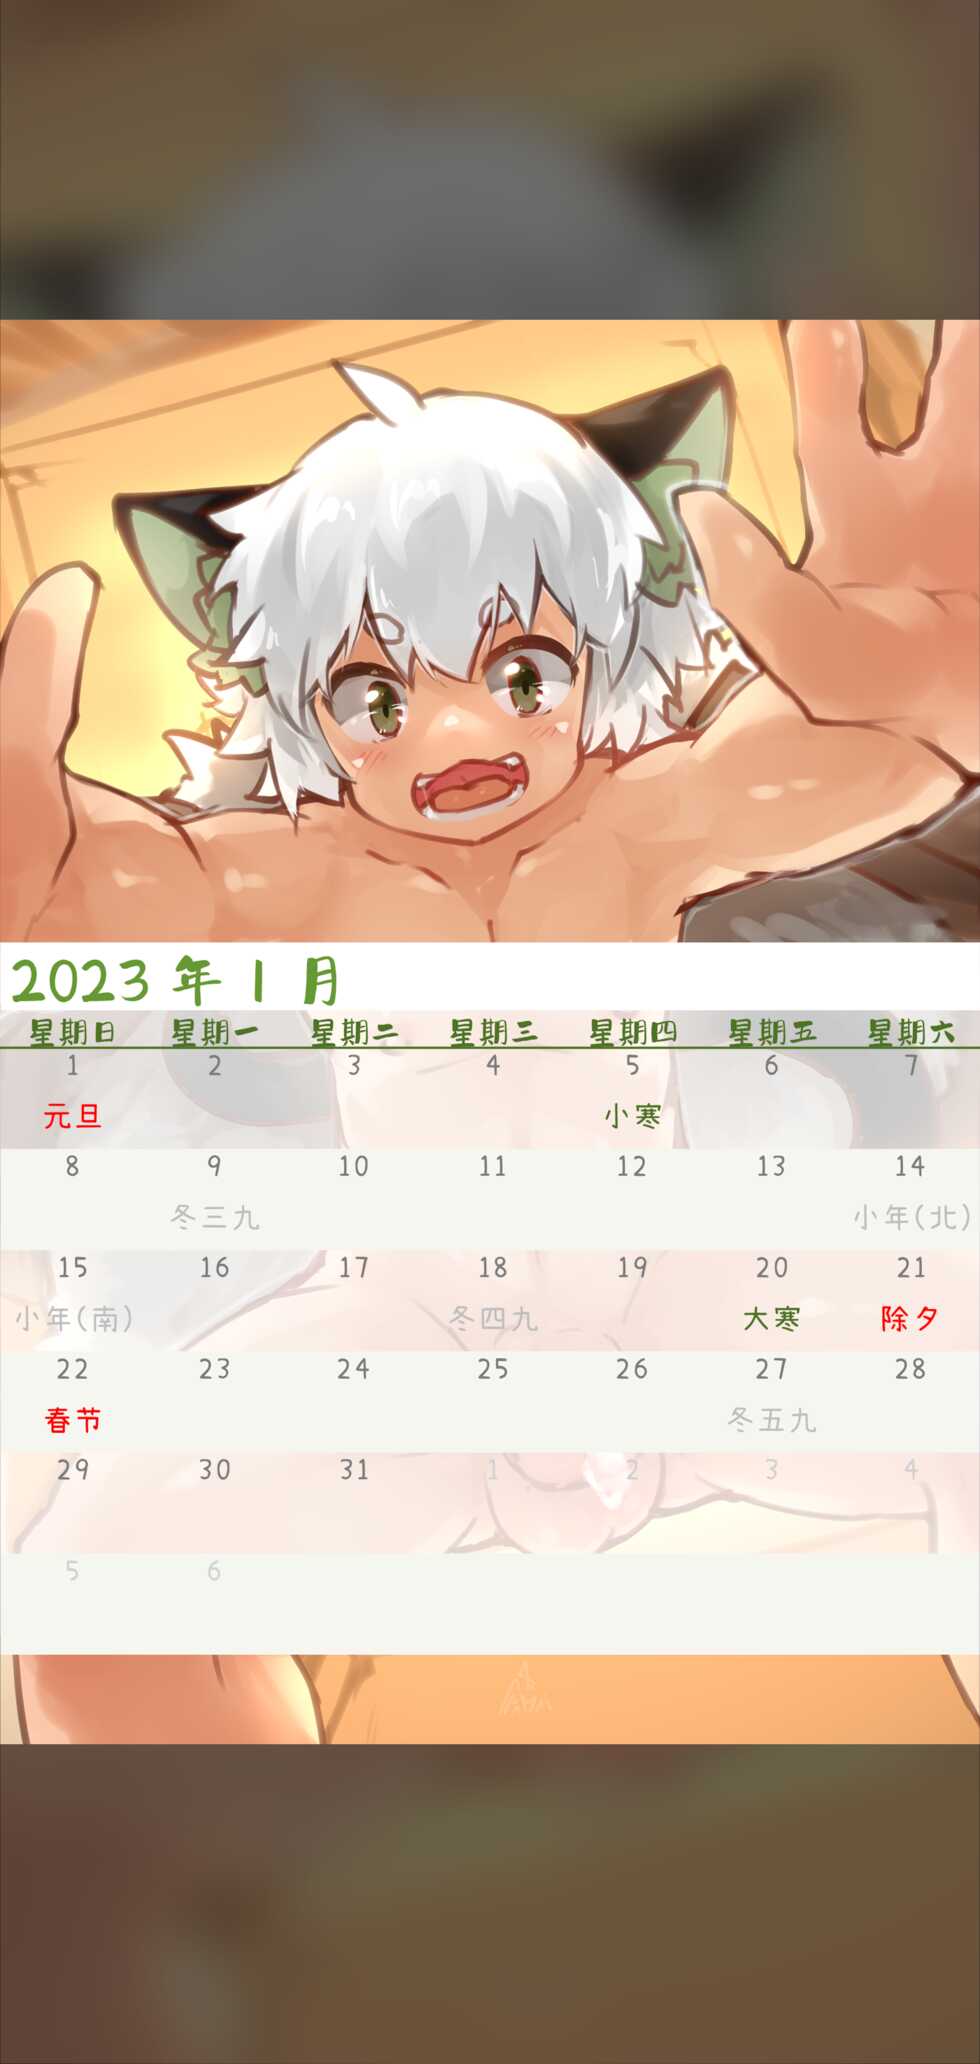 [Suka Genmei] Luo Xiaohei Calendar - Page 3